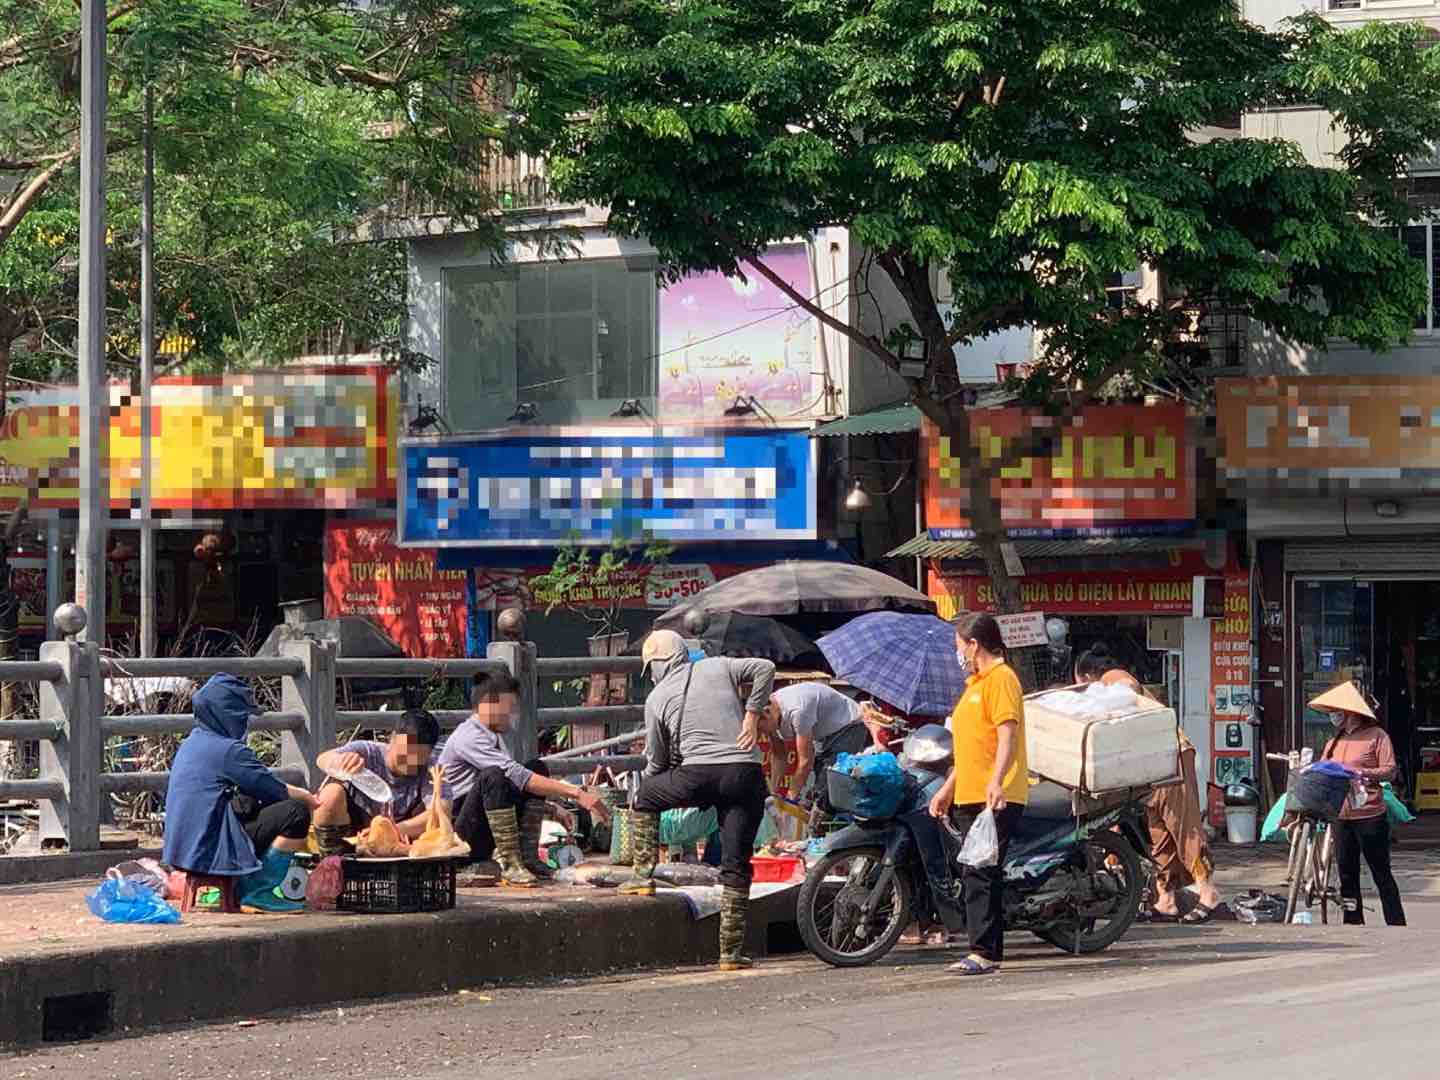 Gần khu vực phố Cầu Mới (Thanh Xuân, Hà Nội), hoạt động mua bán trái phép diễn ra tấp nập. Ảnh: Nhật Minh